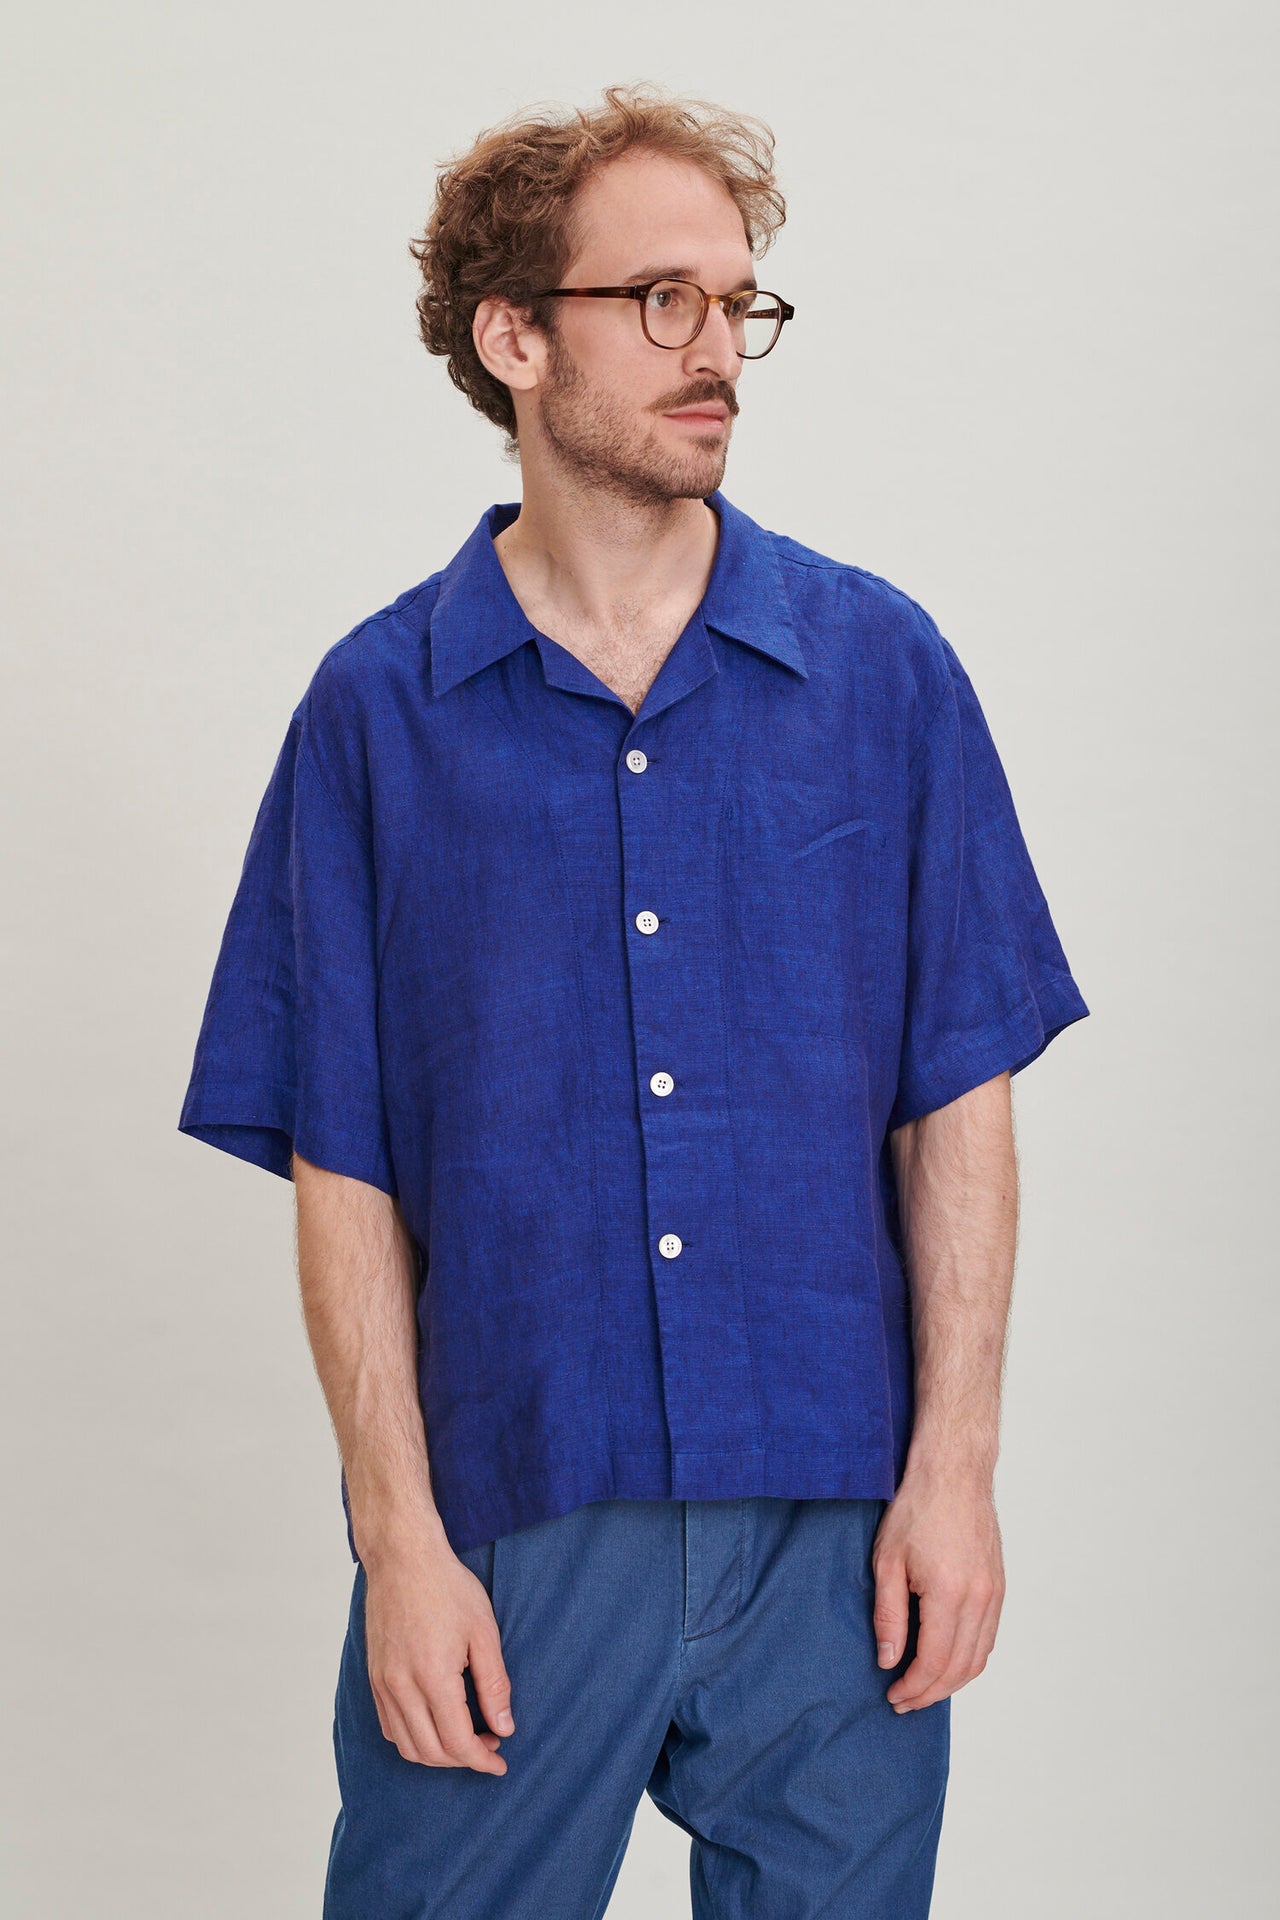 ソフトでエアリーなコバルトブルーのボヘミアンリネン製半袖キューバンカラーシャツ